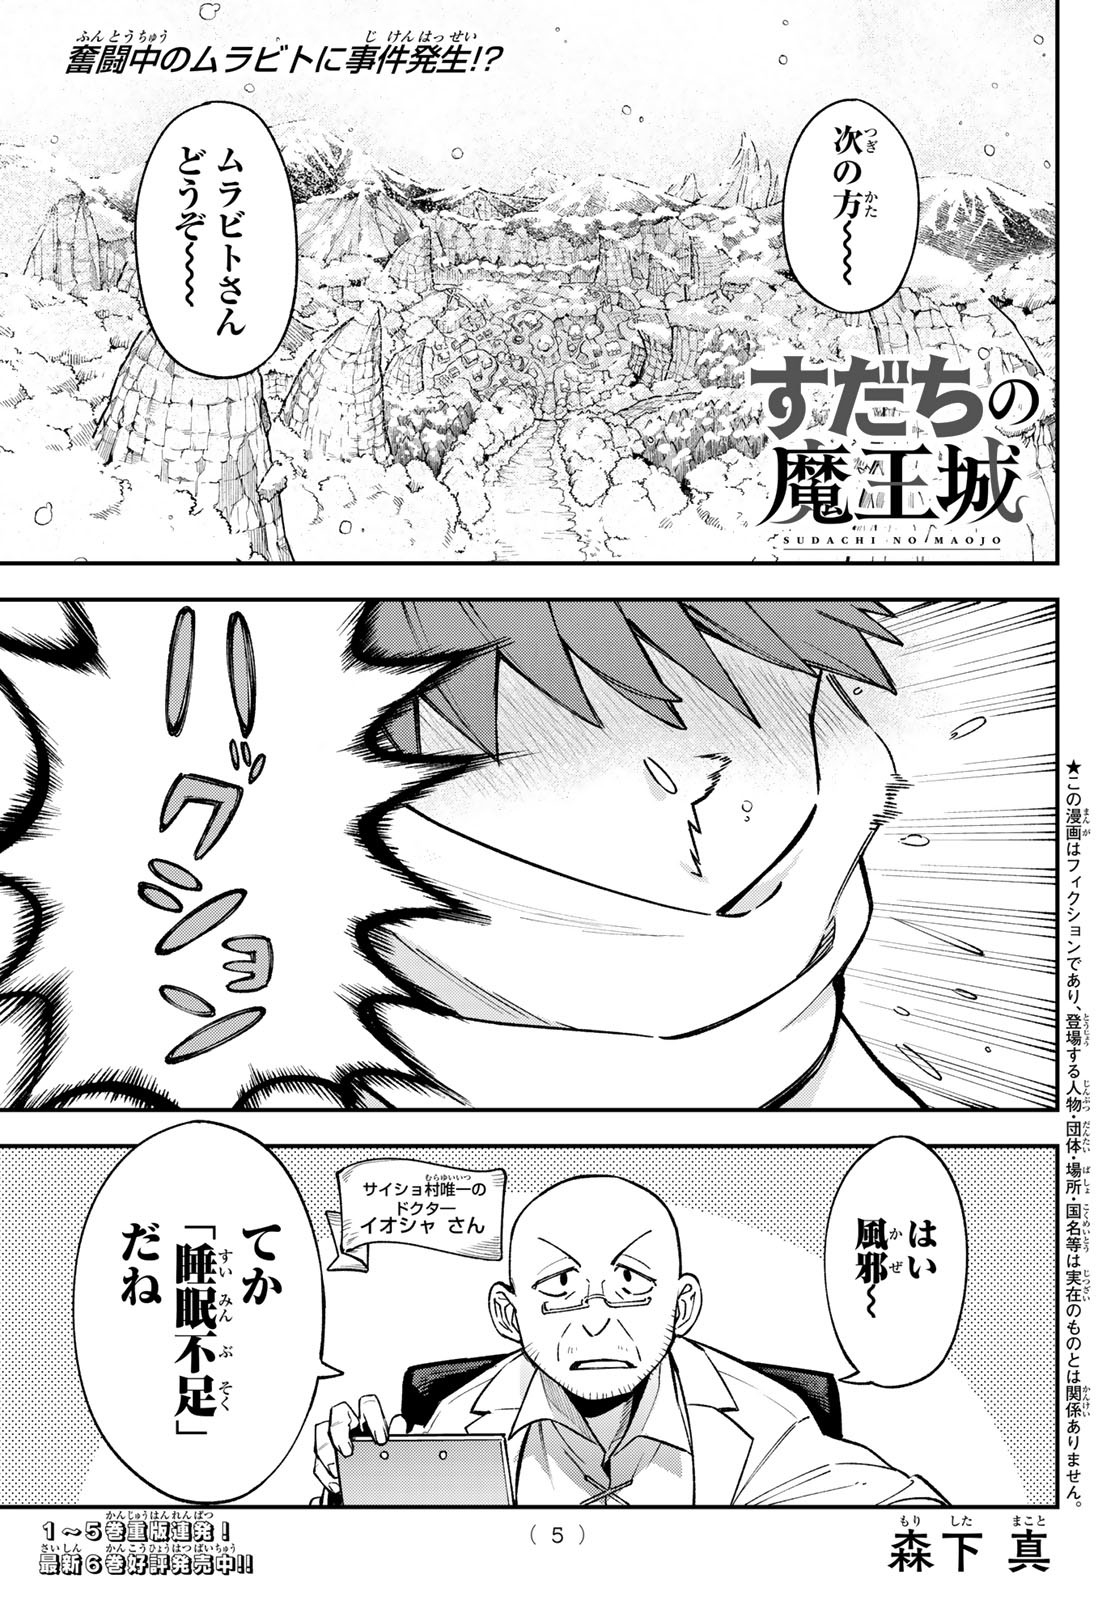 Sudachi no Maoujou - Chapter 27 - Page 2